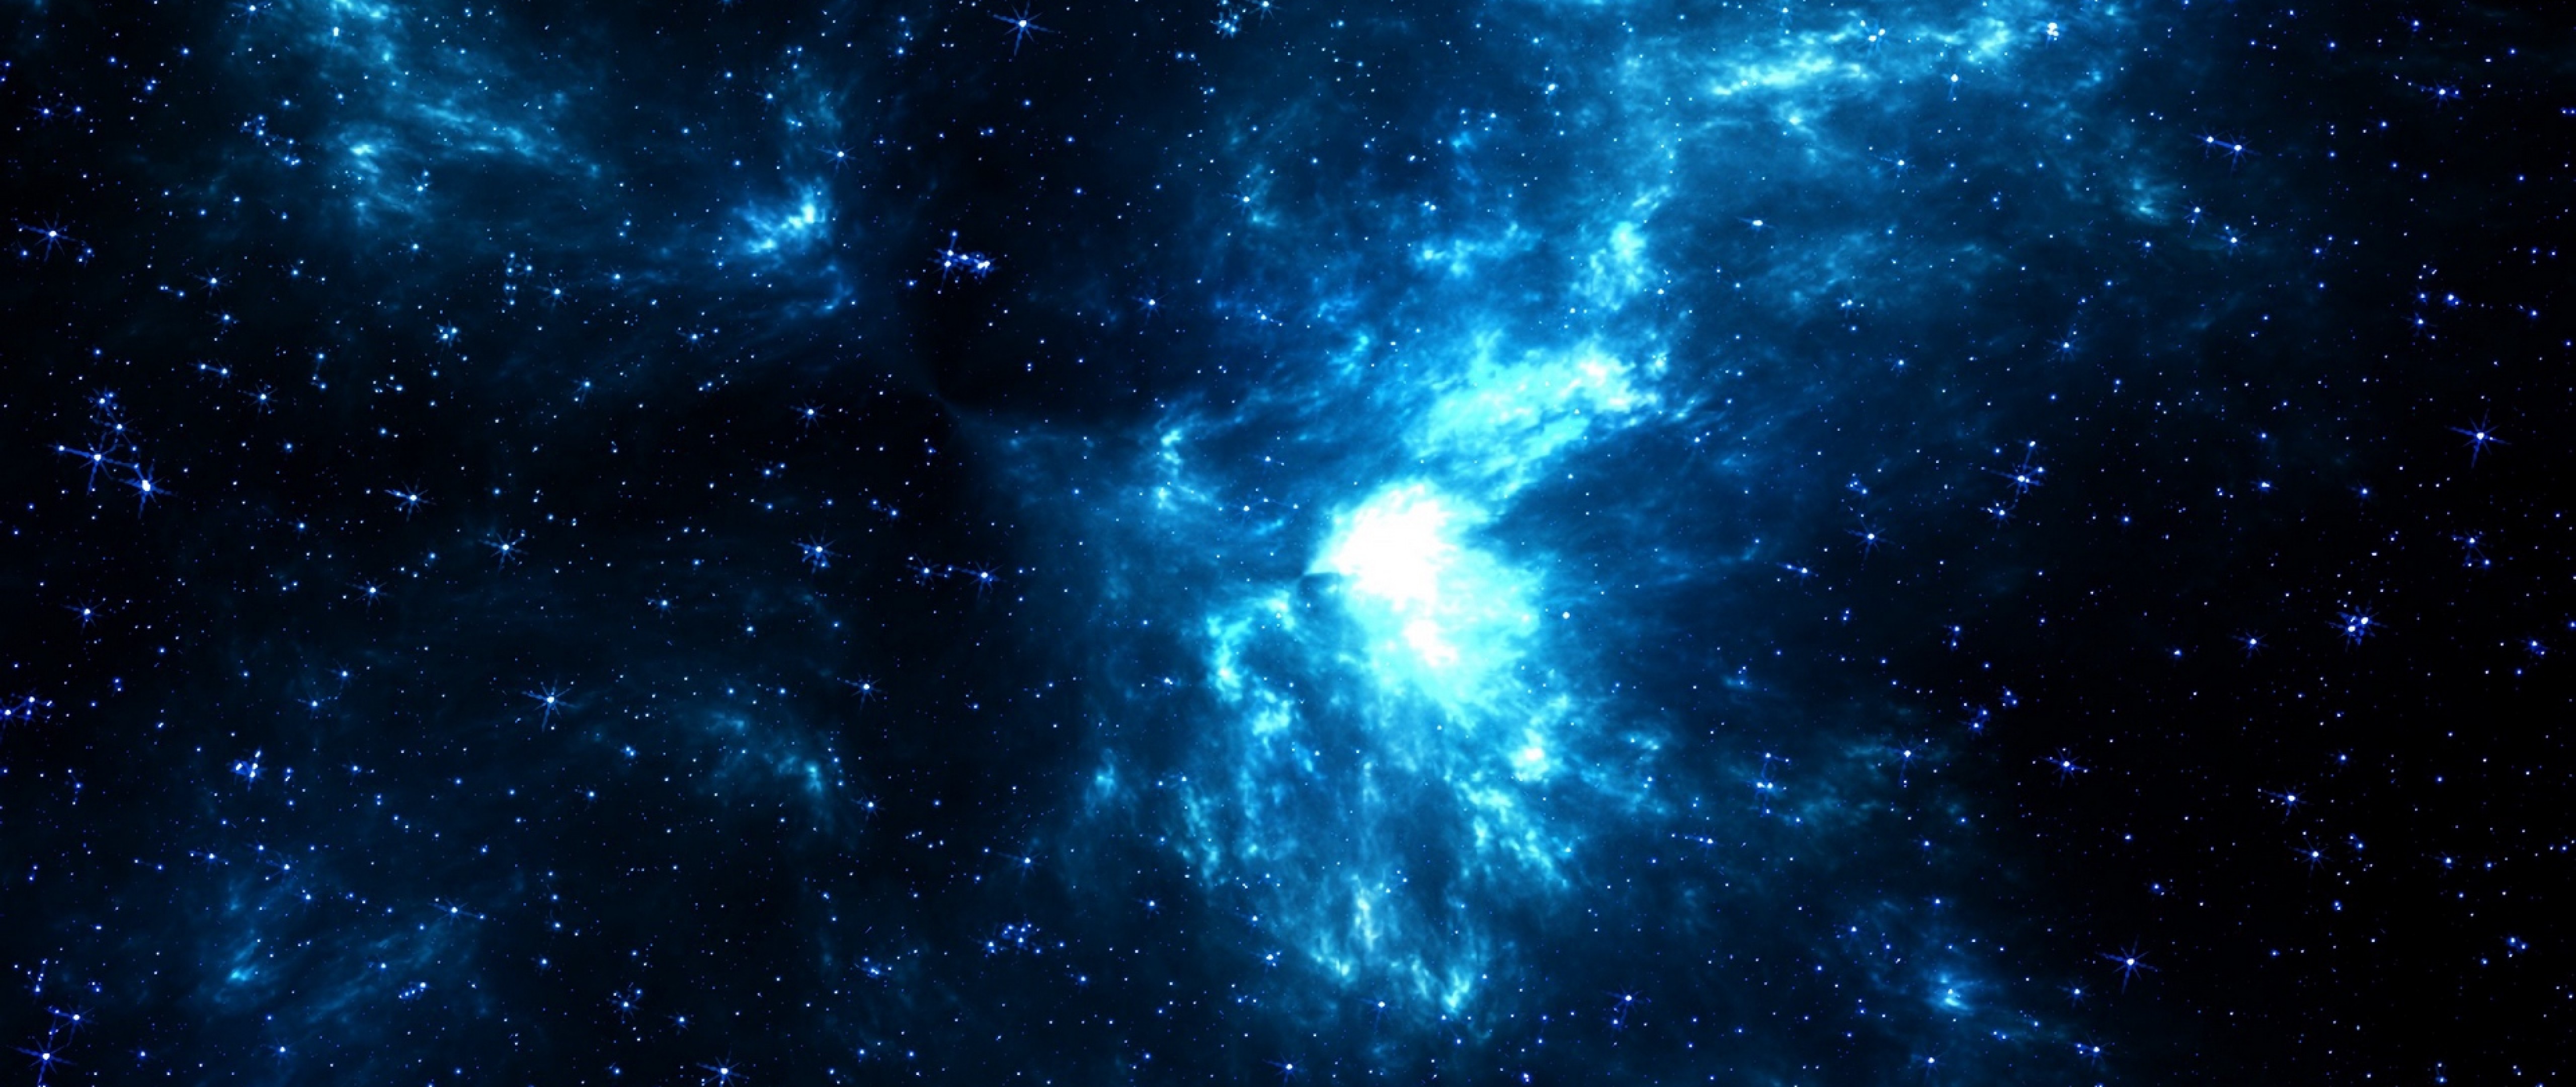 Фотография размером 1024 2048. Космический фон. Космос звезды. Синий космос. Темно синий космос.